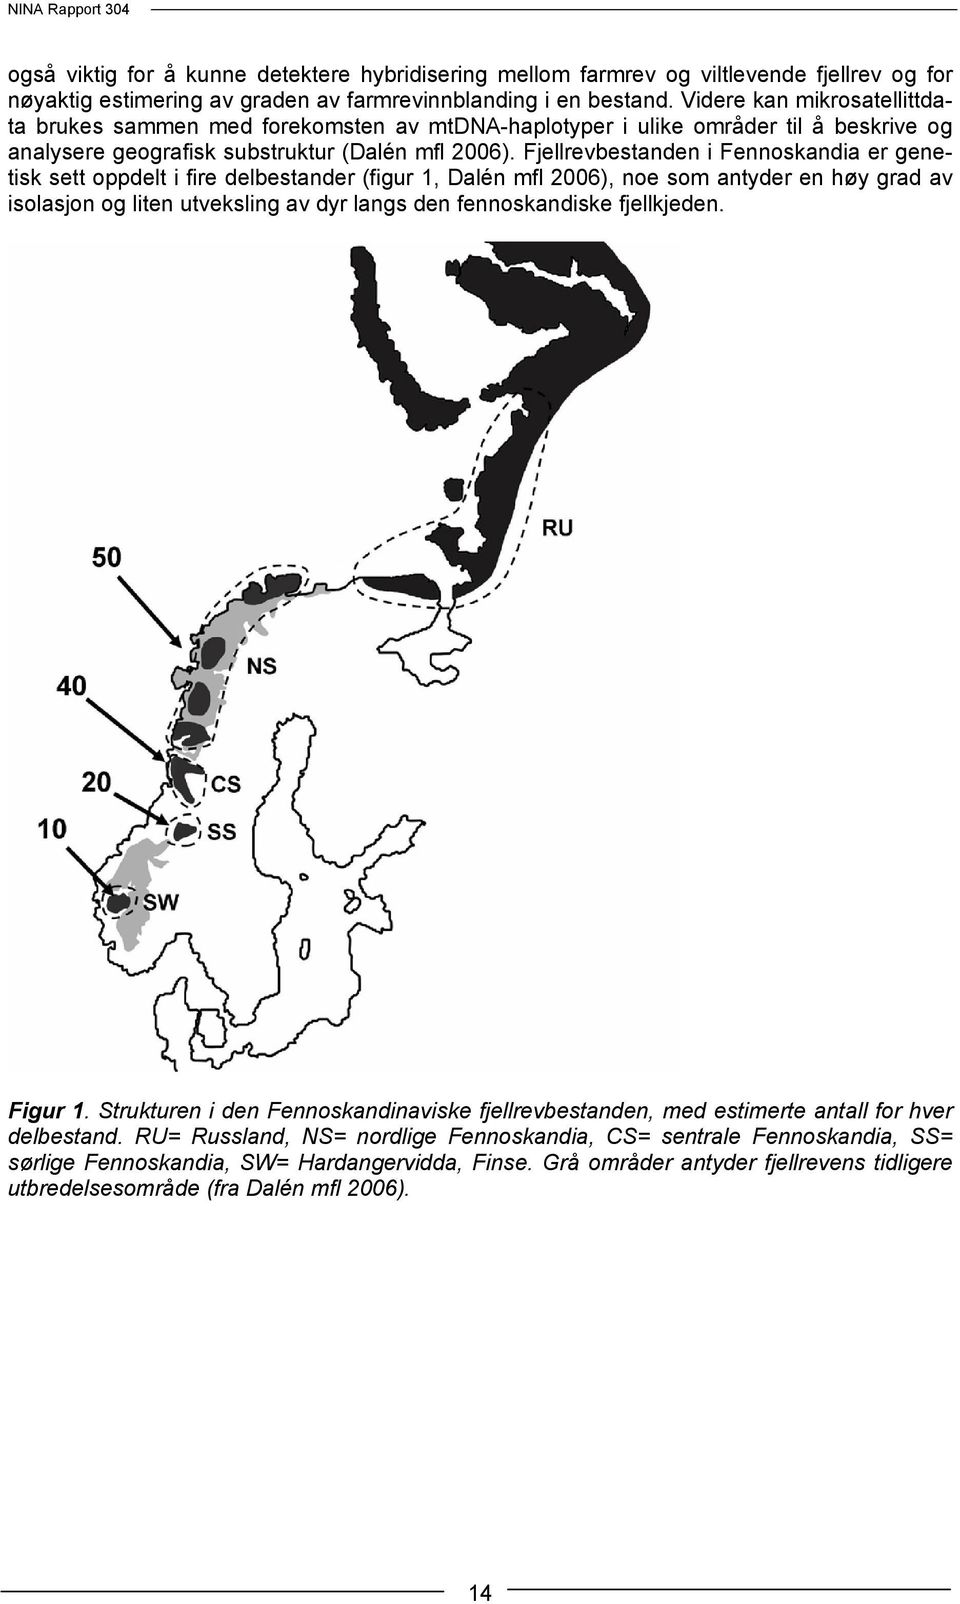 Fjellrevbestanden i Fennoskandia er genetisk sett oppdelt i fire delbestander (figur 1, Dalén mfl 2006), noe som antyder en høy grad av isolasjon og liten utveksling av dyr langs den fennoskandiske